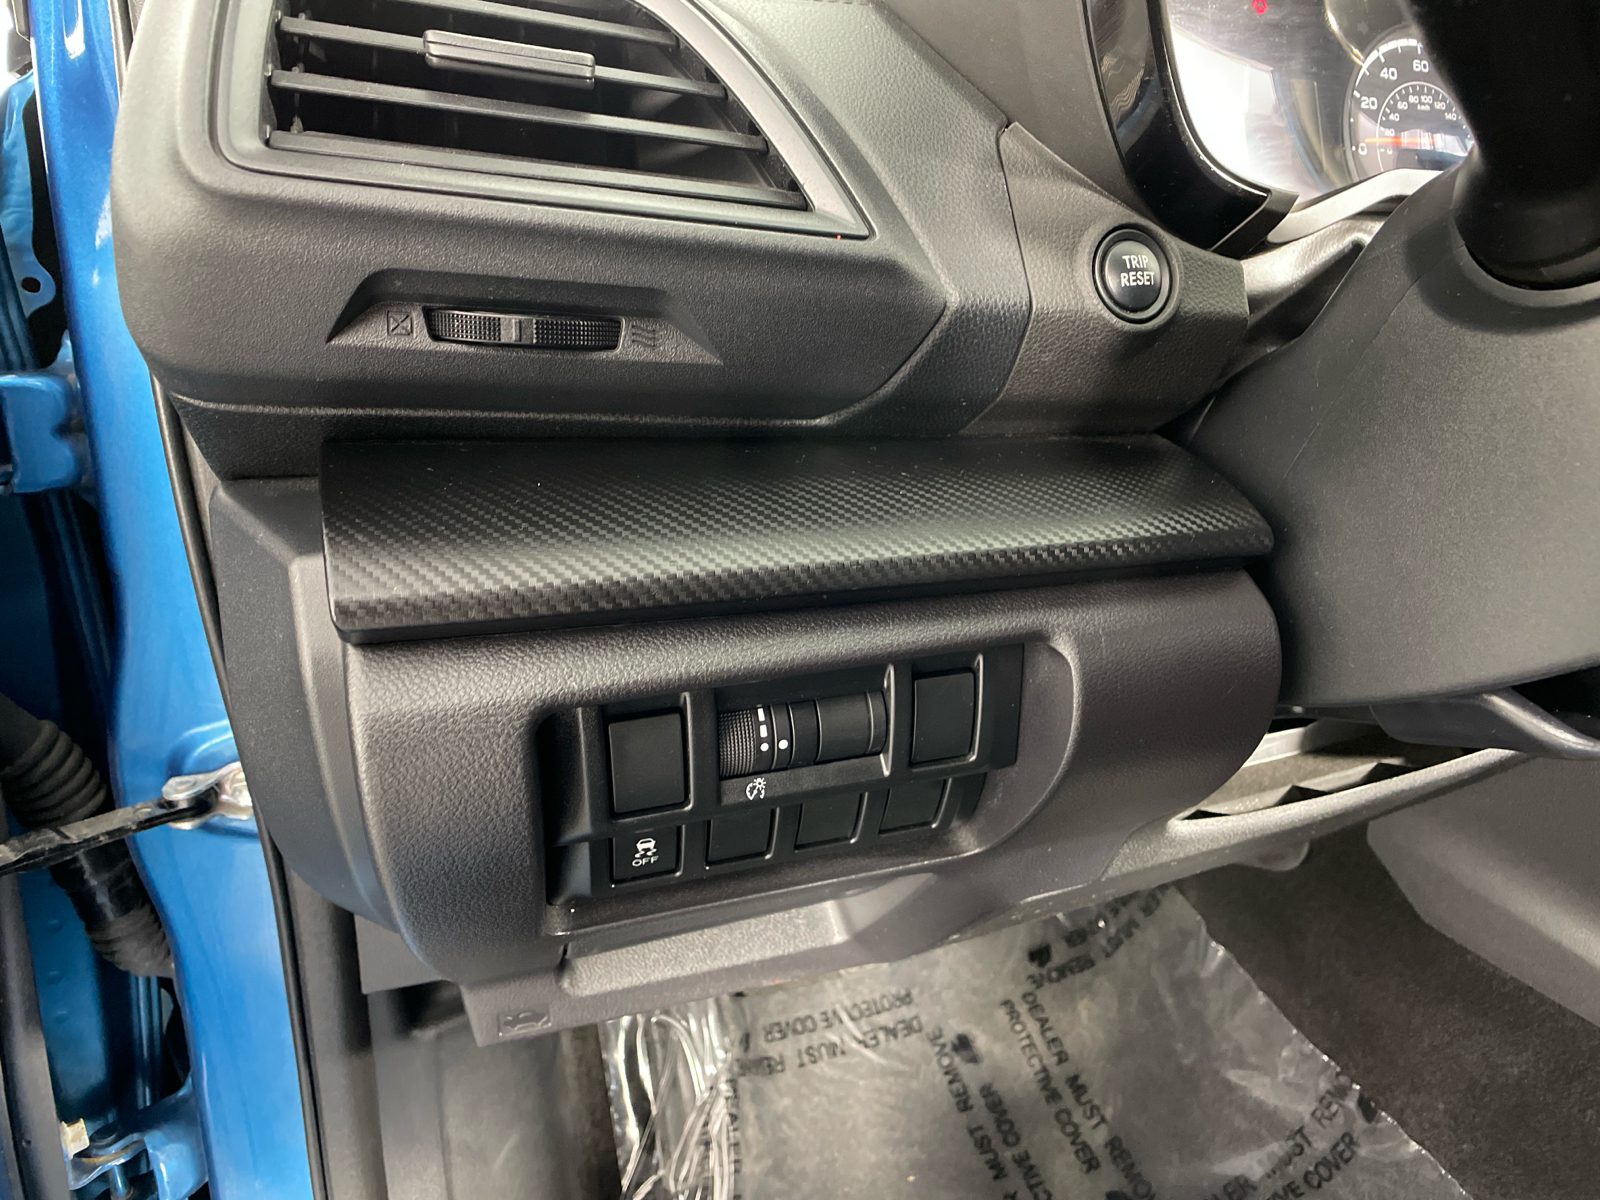 2018 Subaru Impreza 2.0i 16